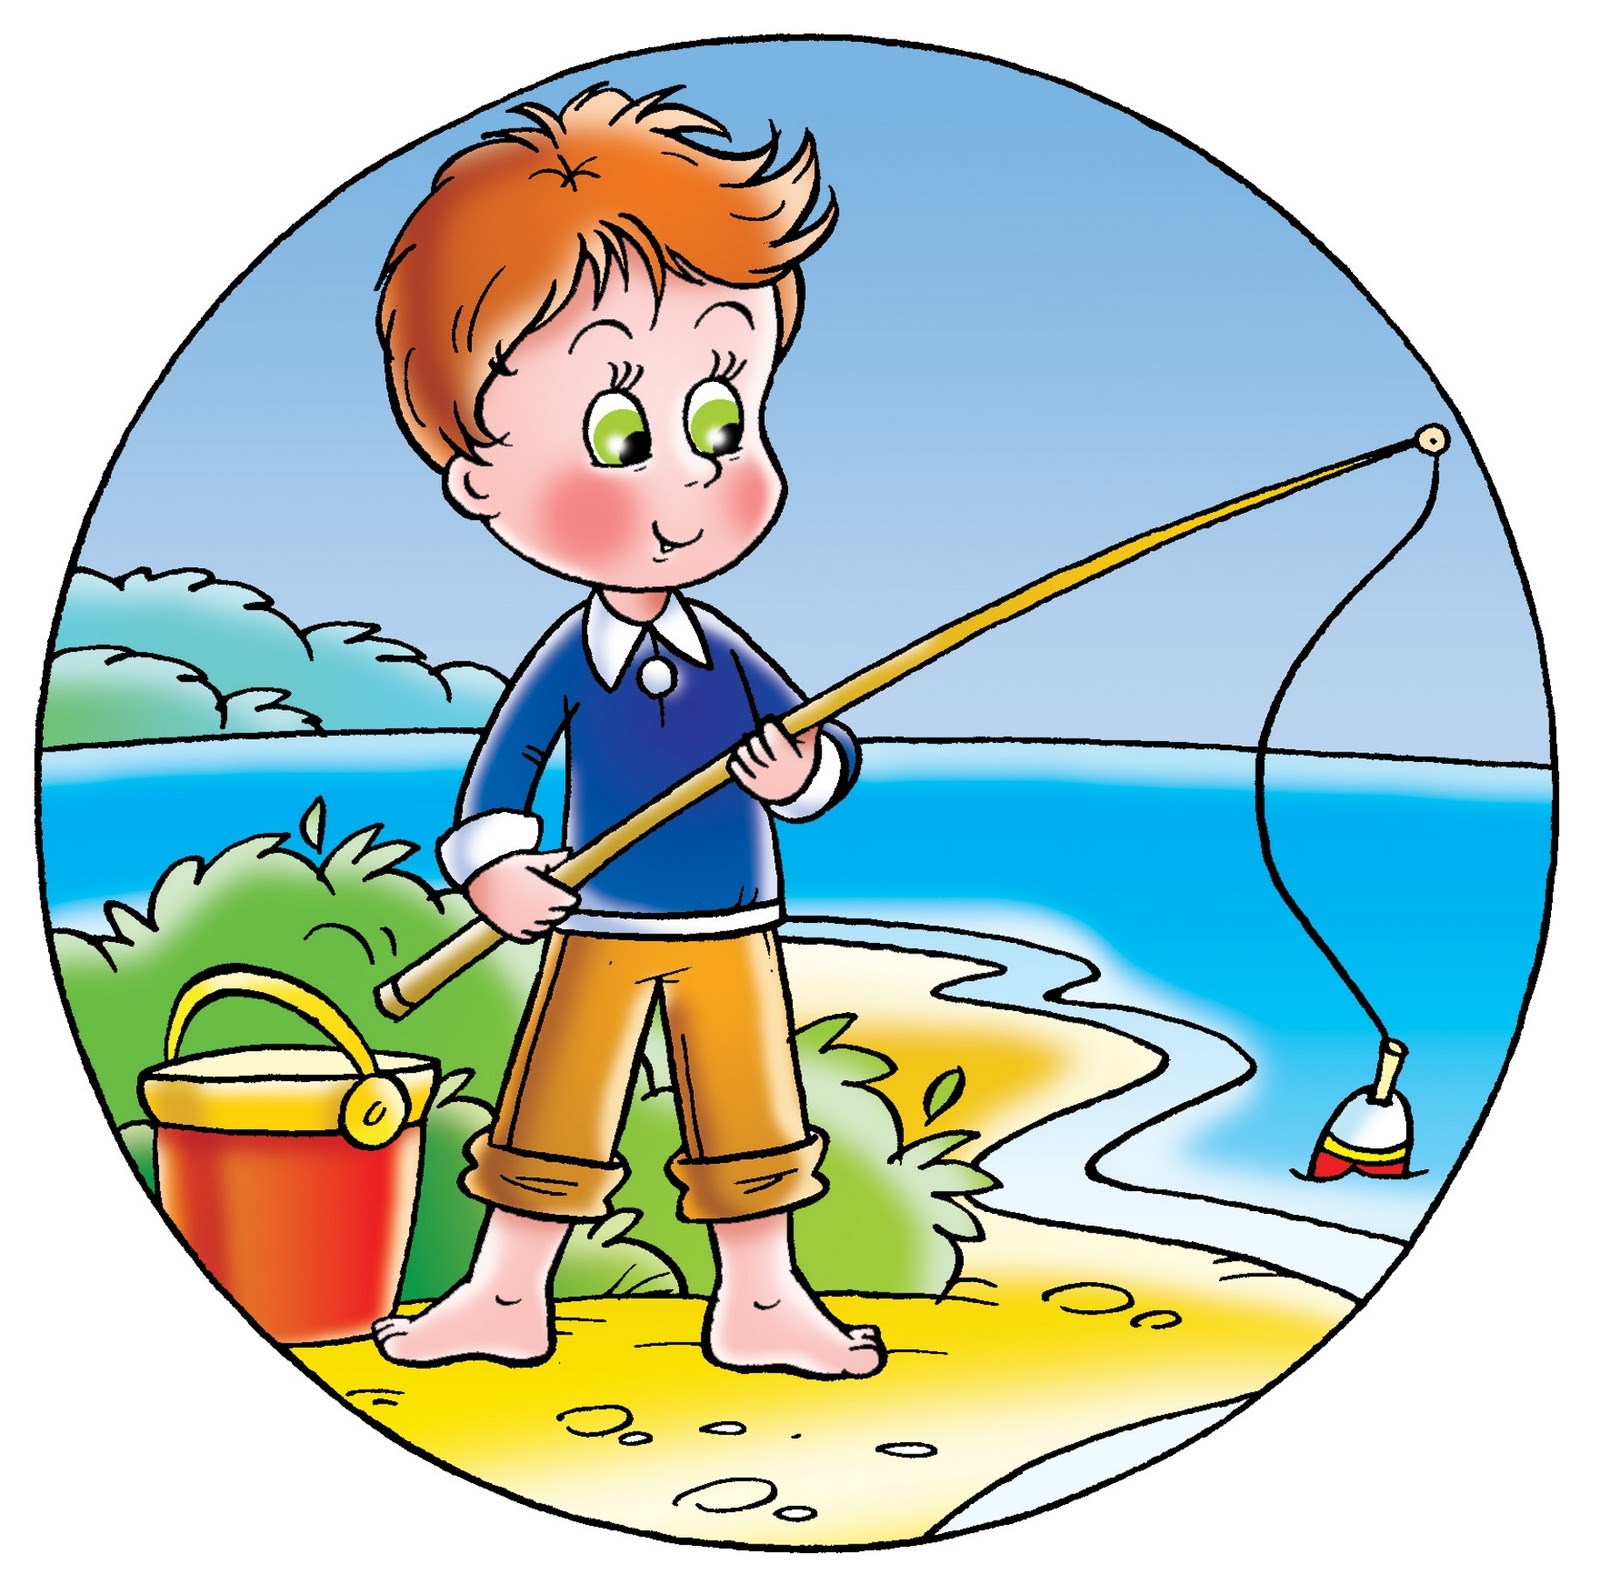 Мальчик ловит рыбу